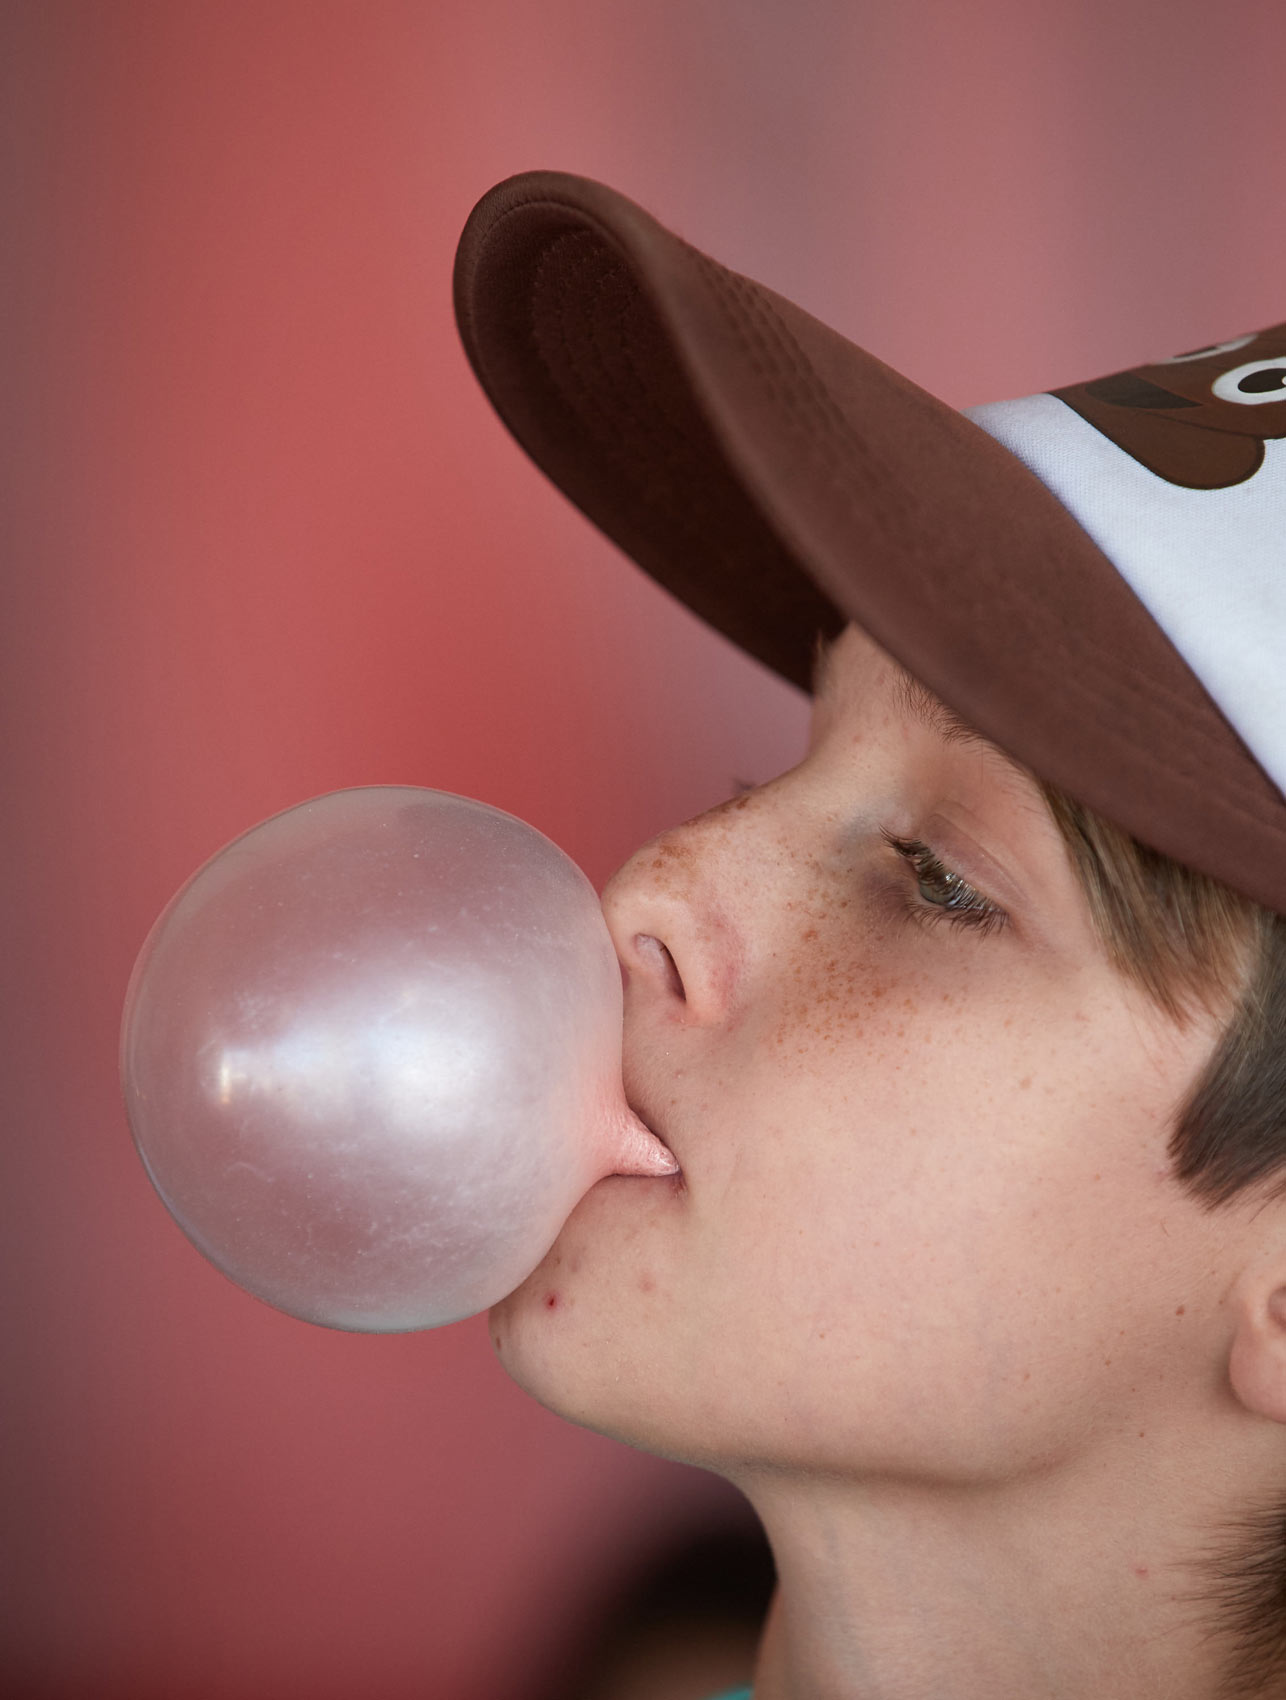 Bubble Gum Blowing Contest